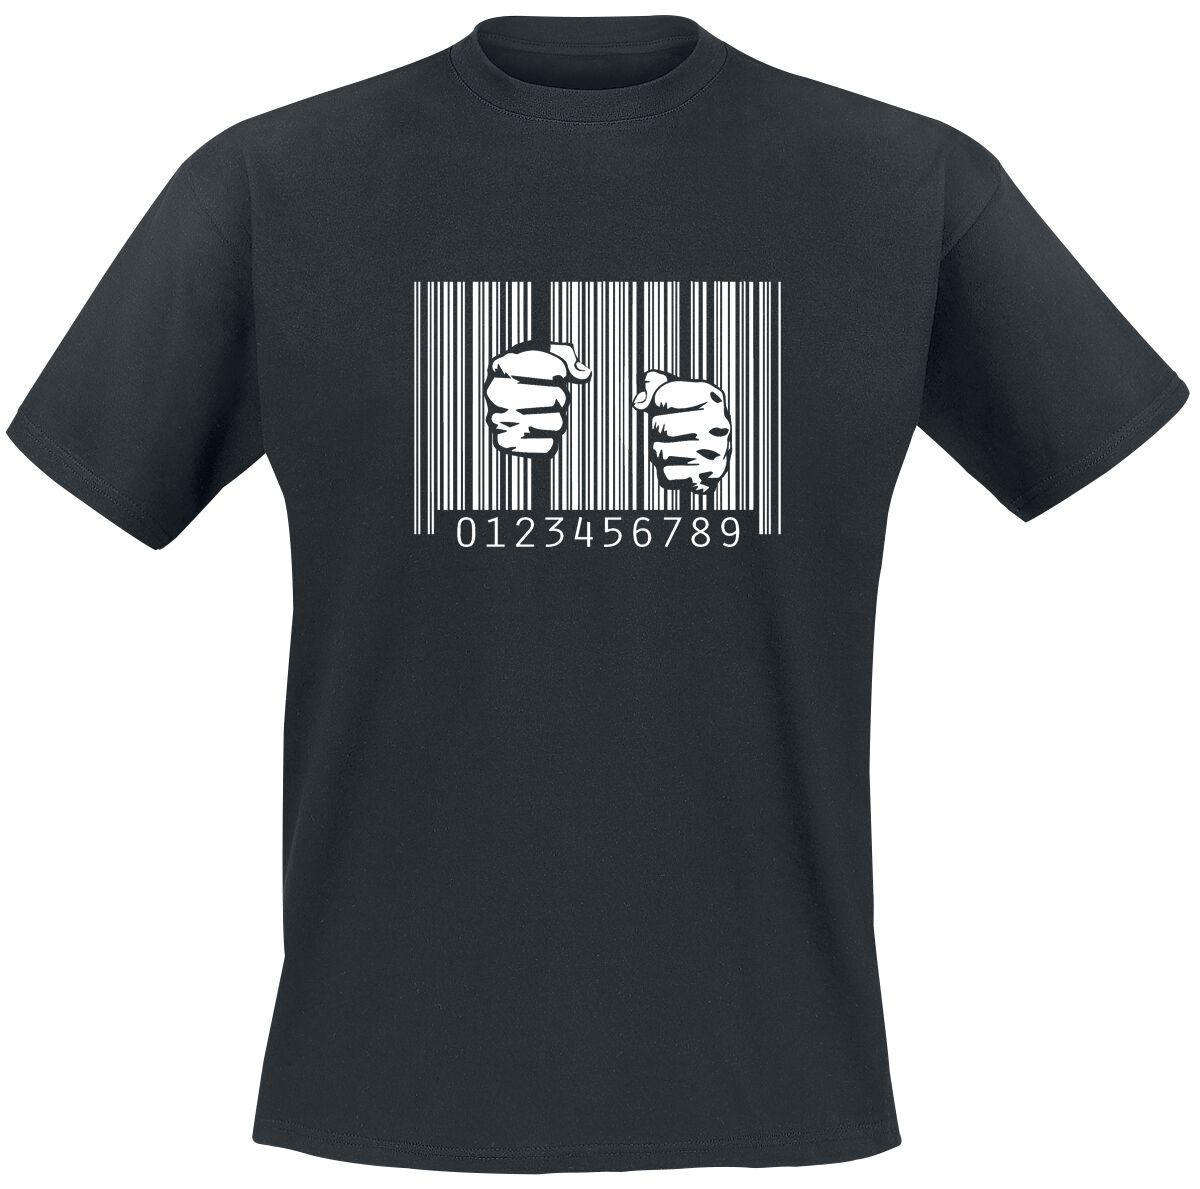 Funshirt T-Shirt - Barcode - Prison - M bis 3XL - für Männer - Größe 3XL - schwarz